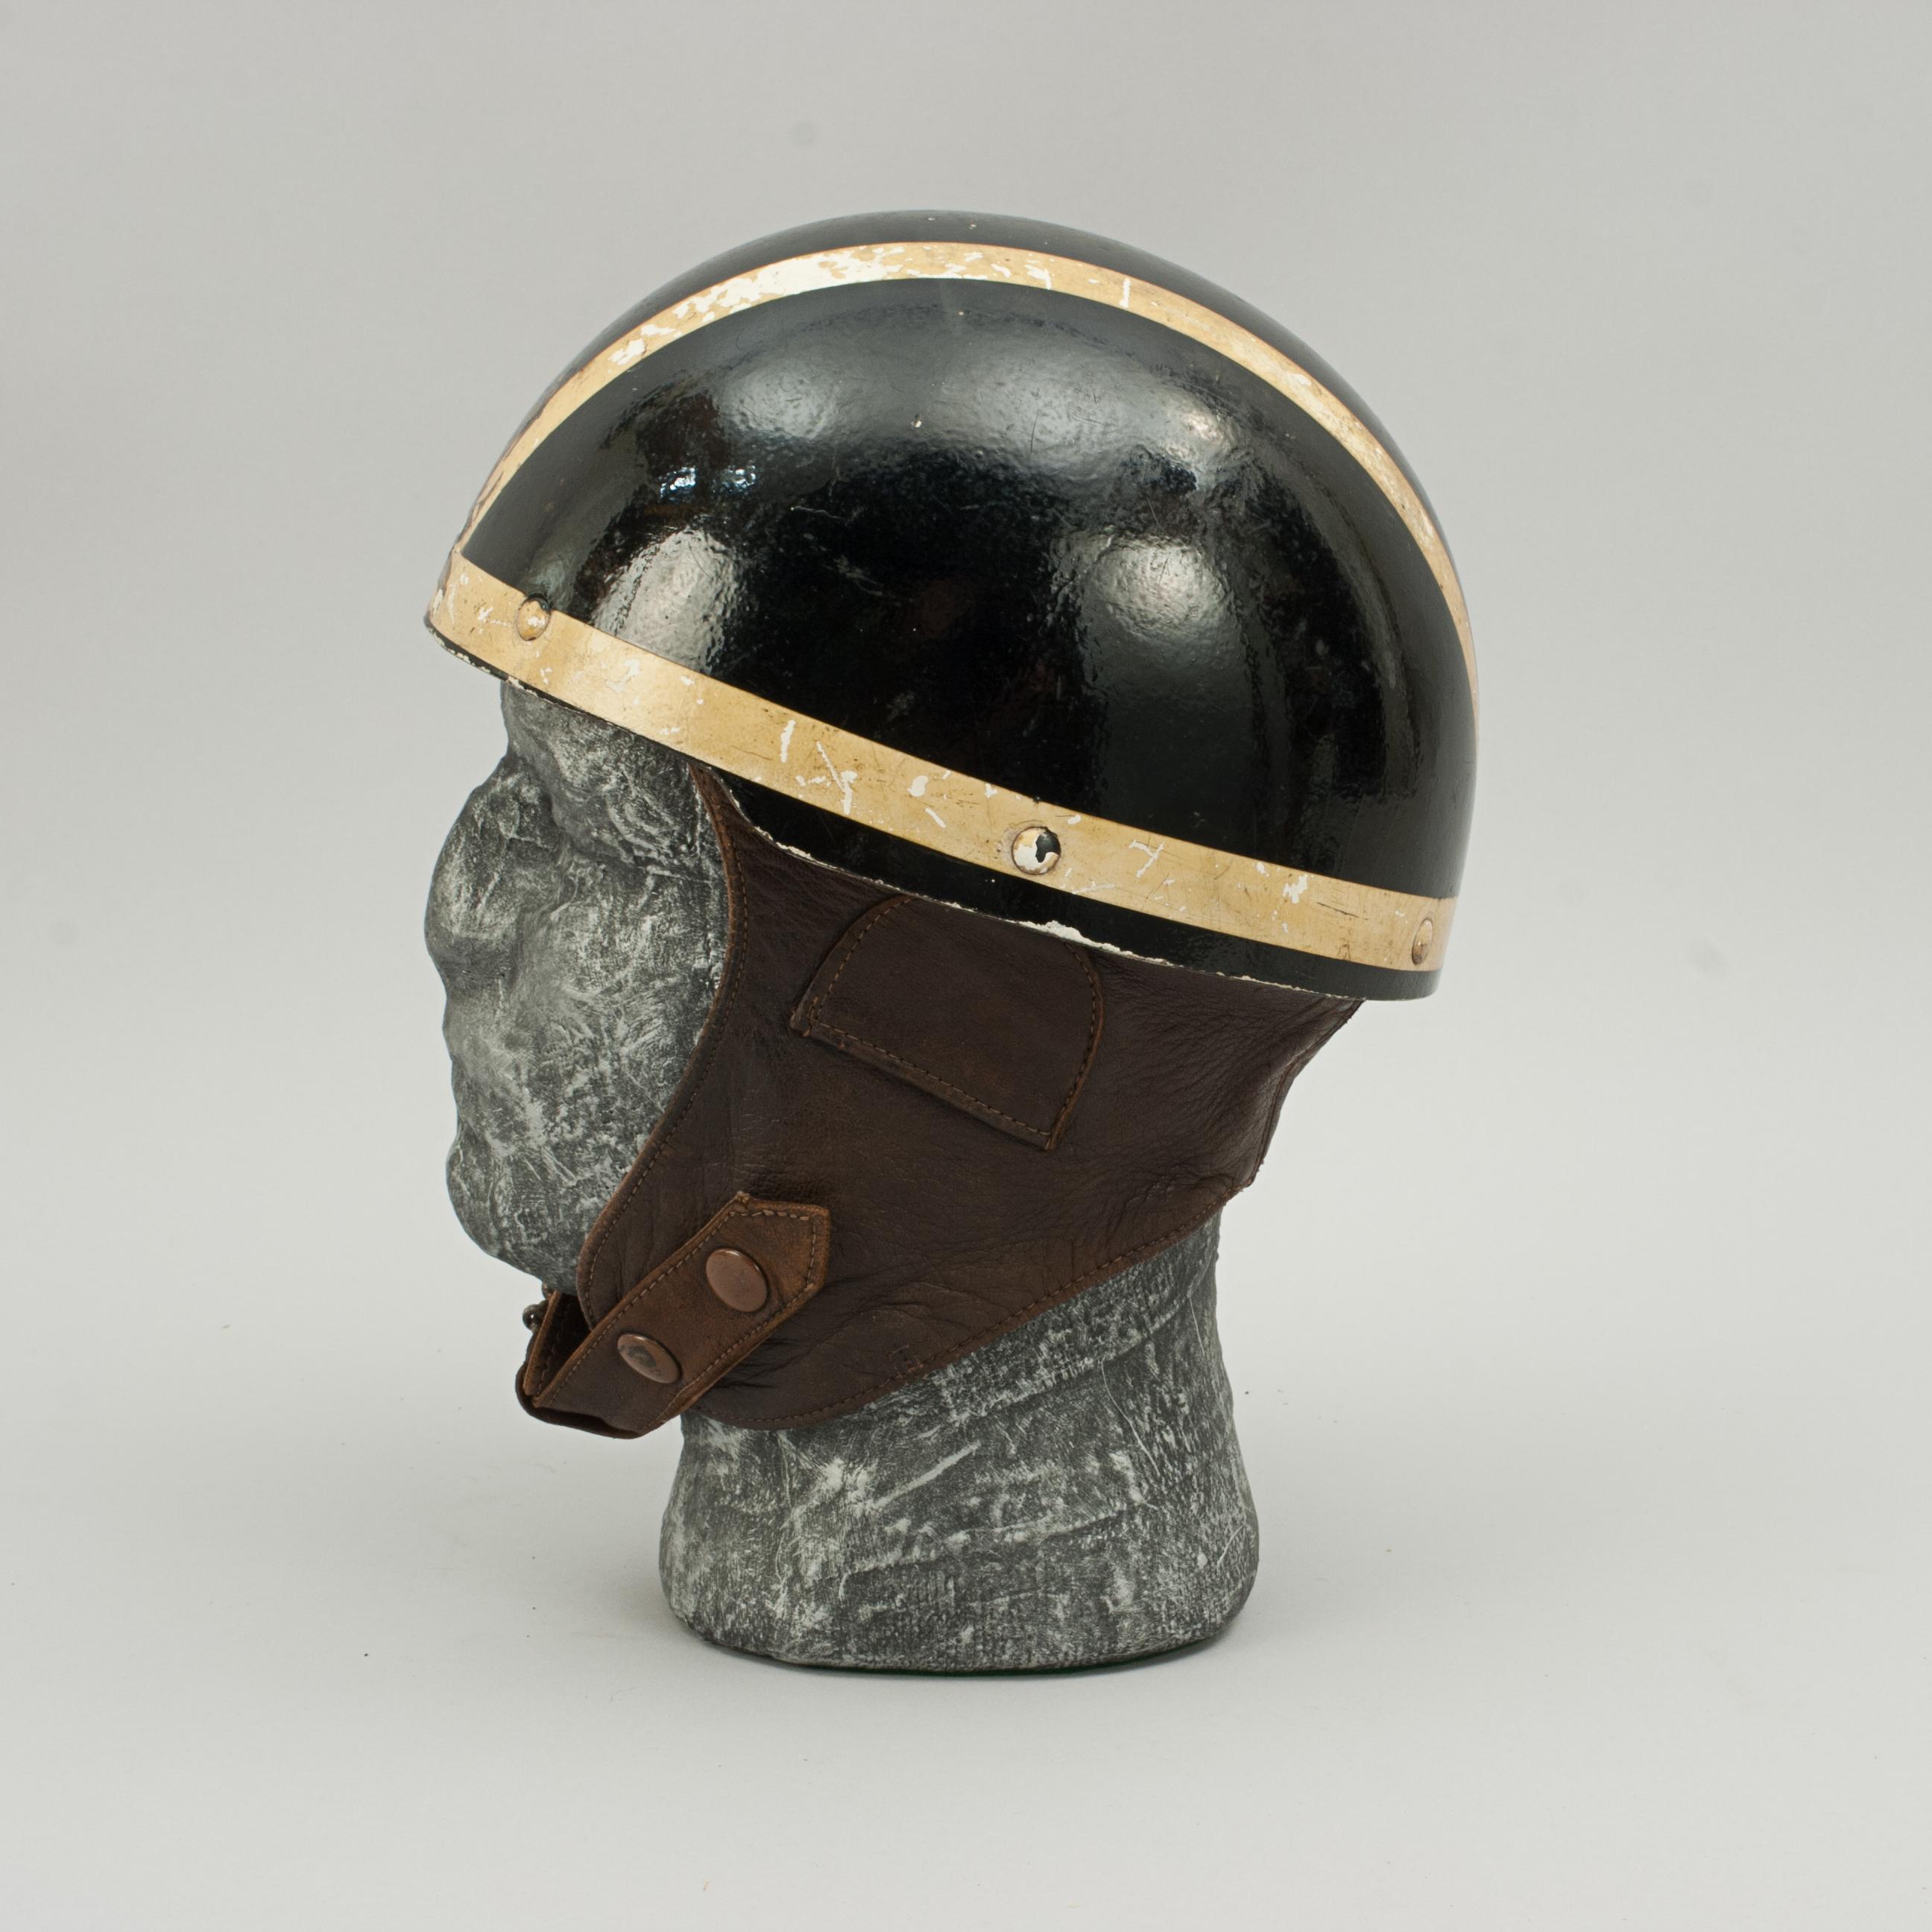 1920s motorcycle helmet